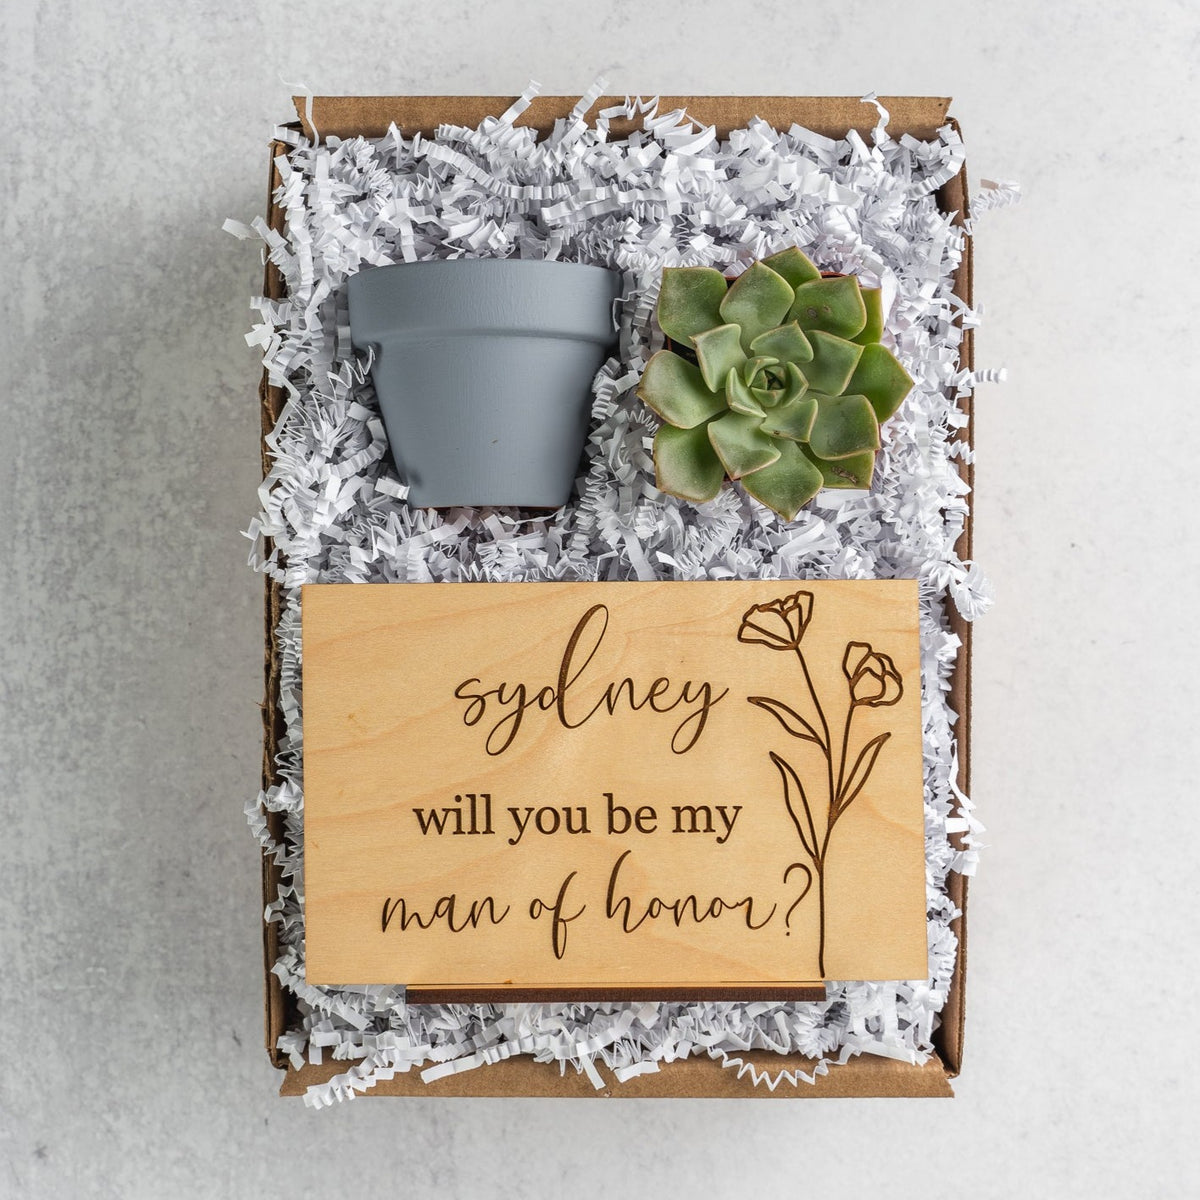 Enchanted Bridesmaid Proposal Gift Box